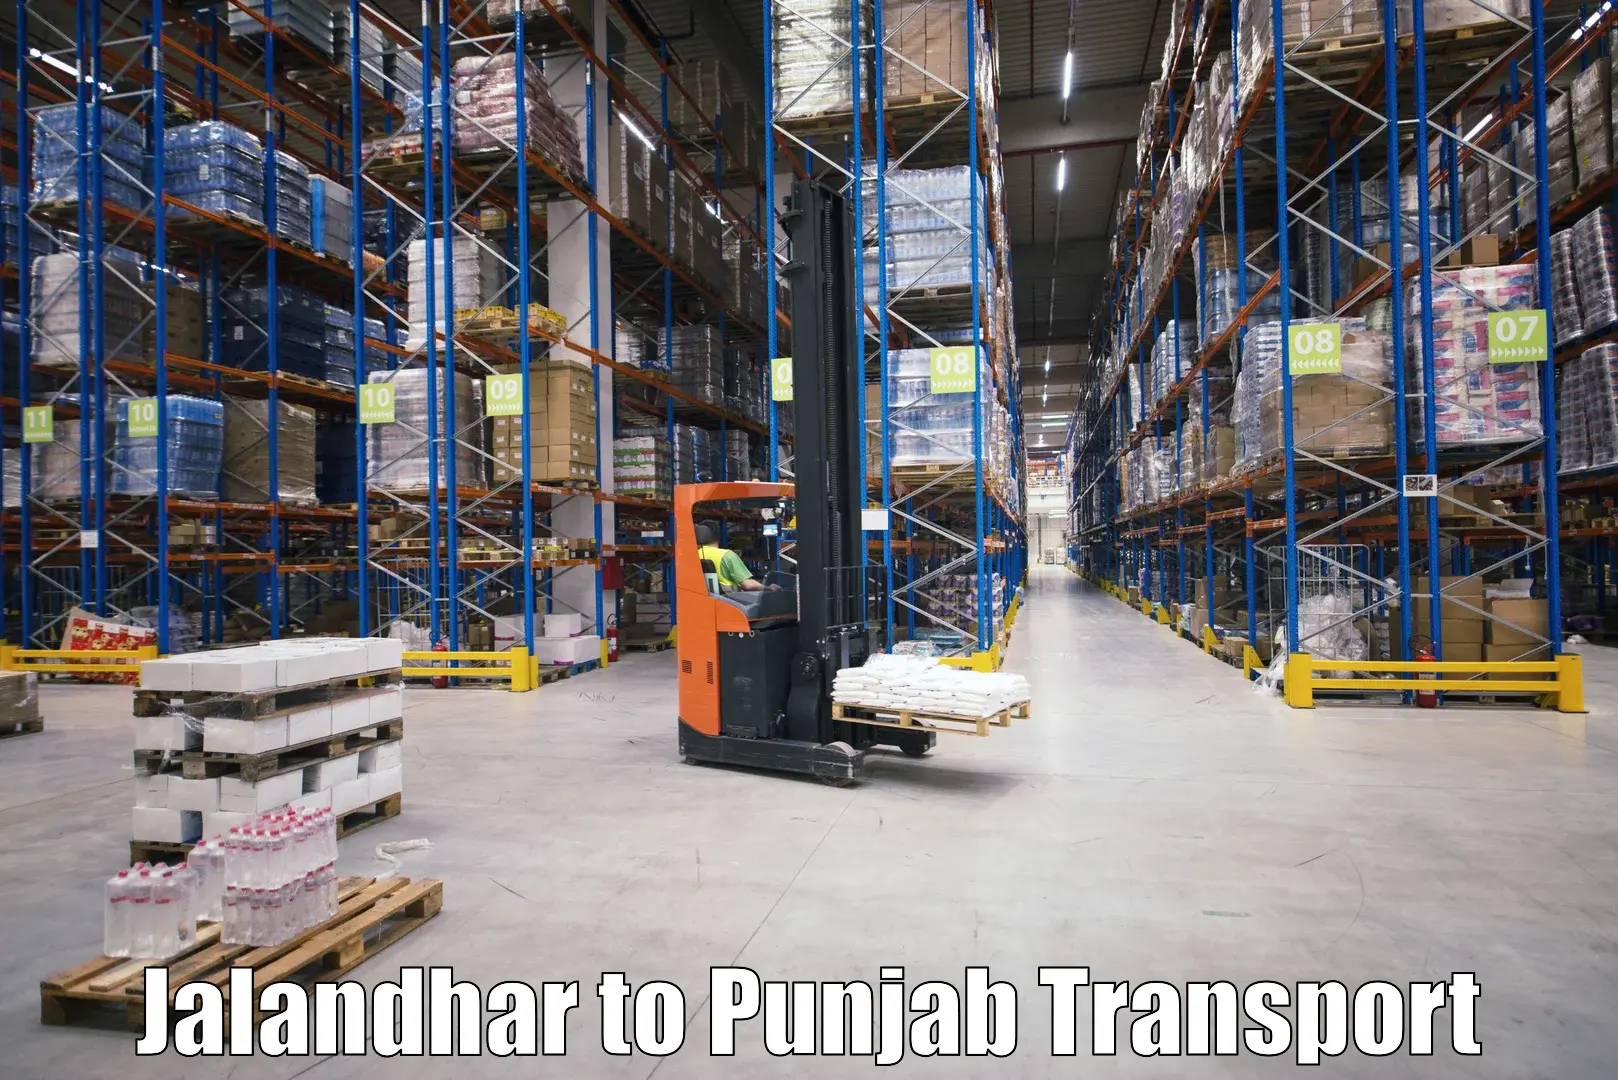 Nationwide transport services Jalandhar to Ajnala